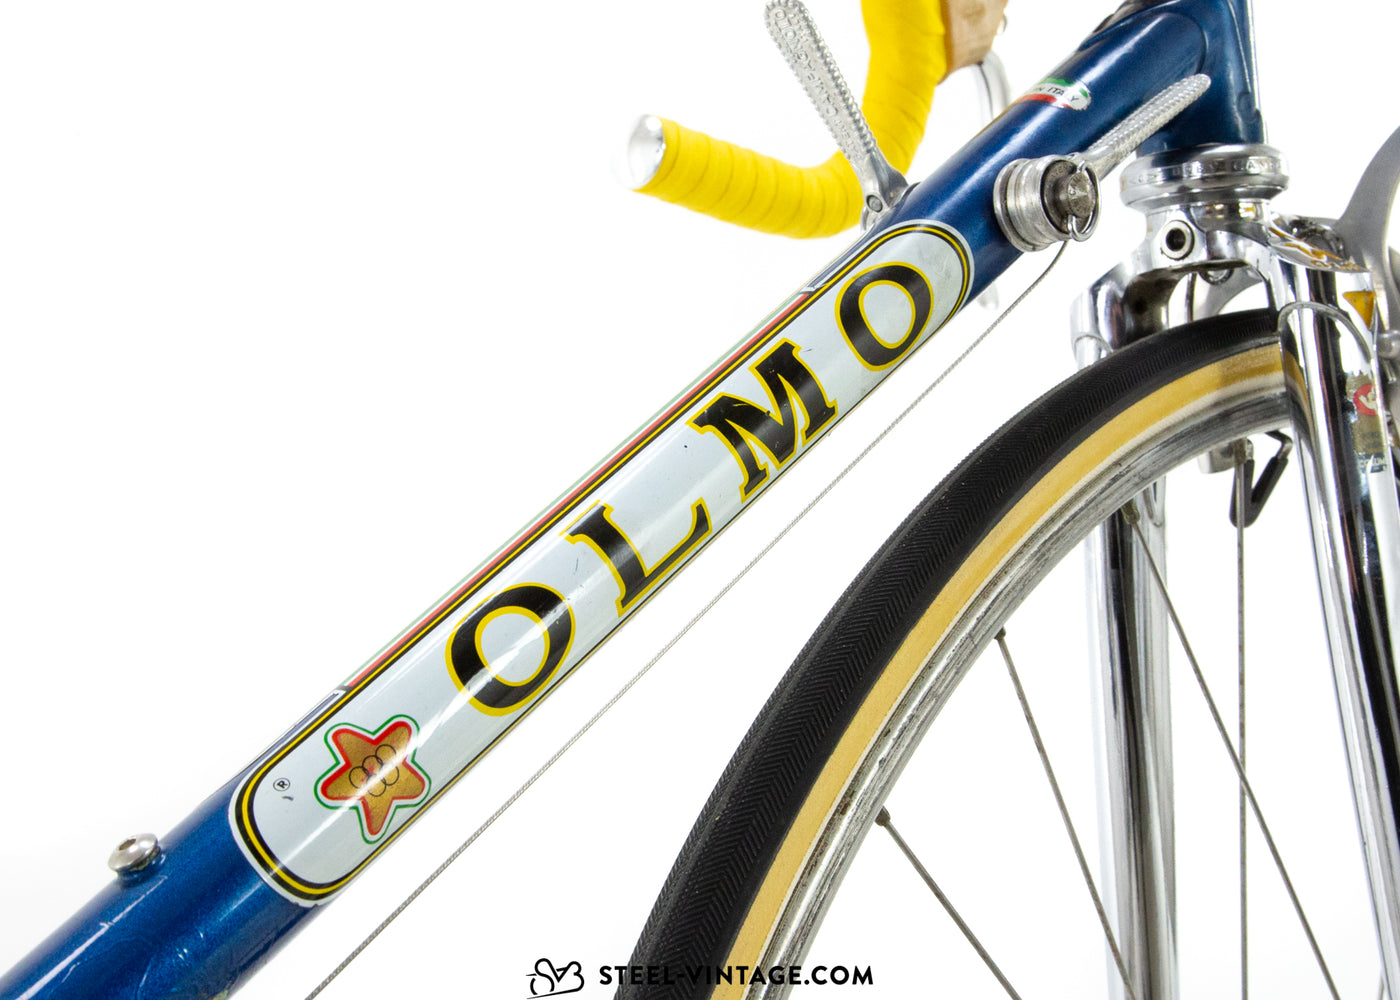 Bicicletta da corsa Olmo Competition 1980